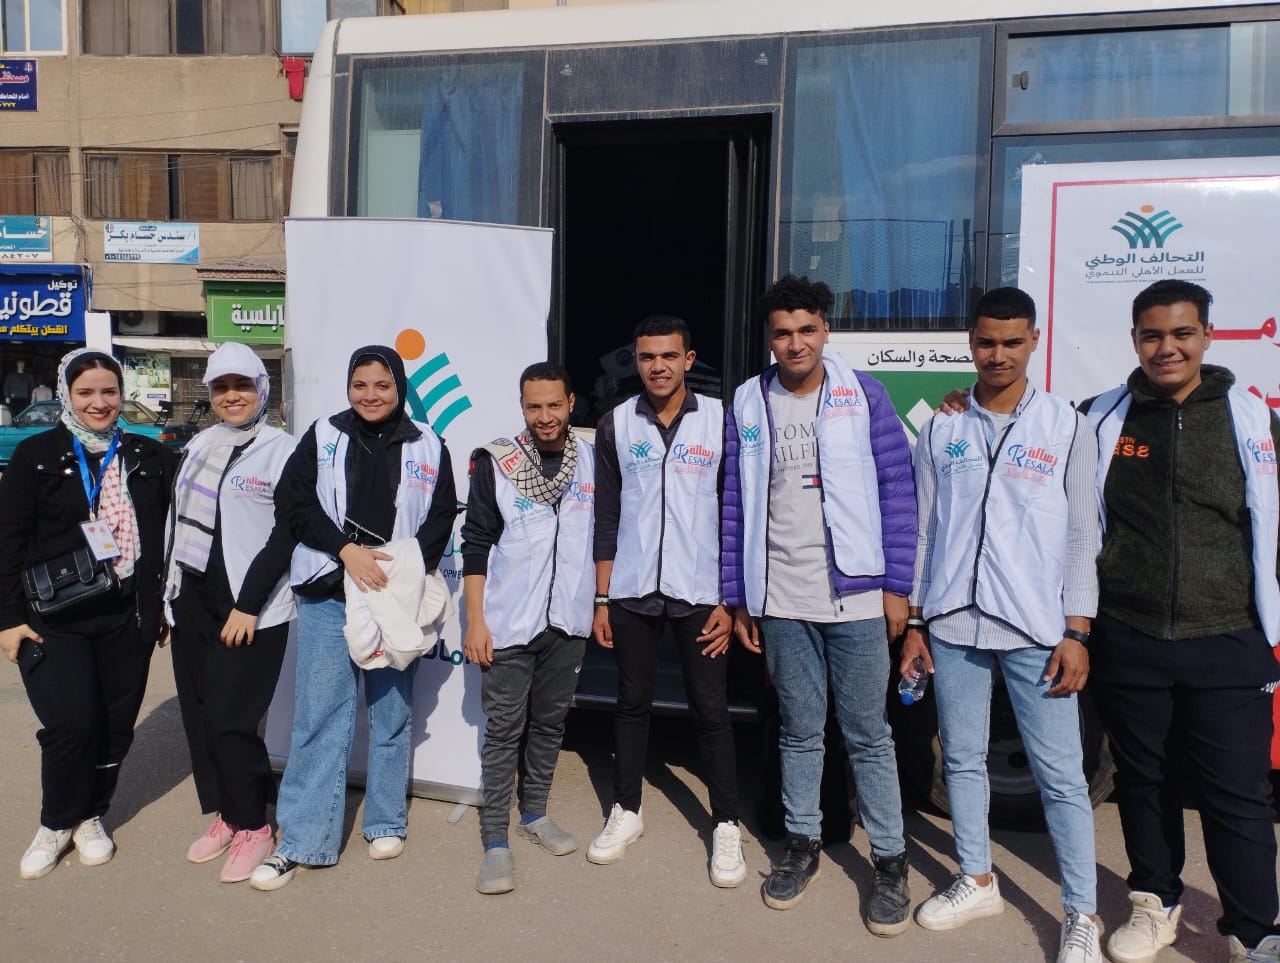 كيان شباب مصر ينظم حملة بالزقازيق للتبرع بالدم للفلسطينيين